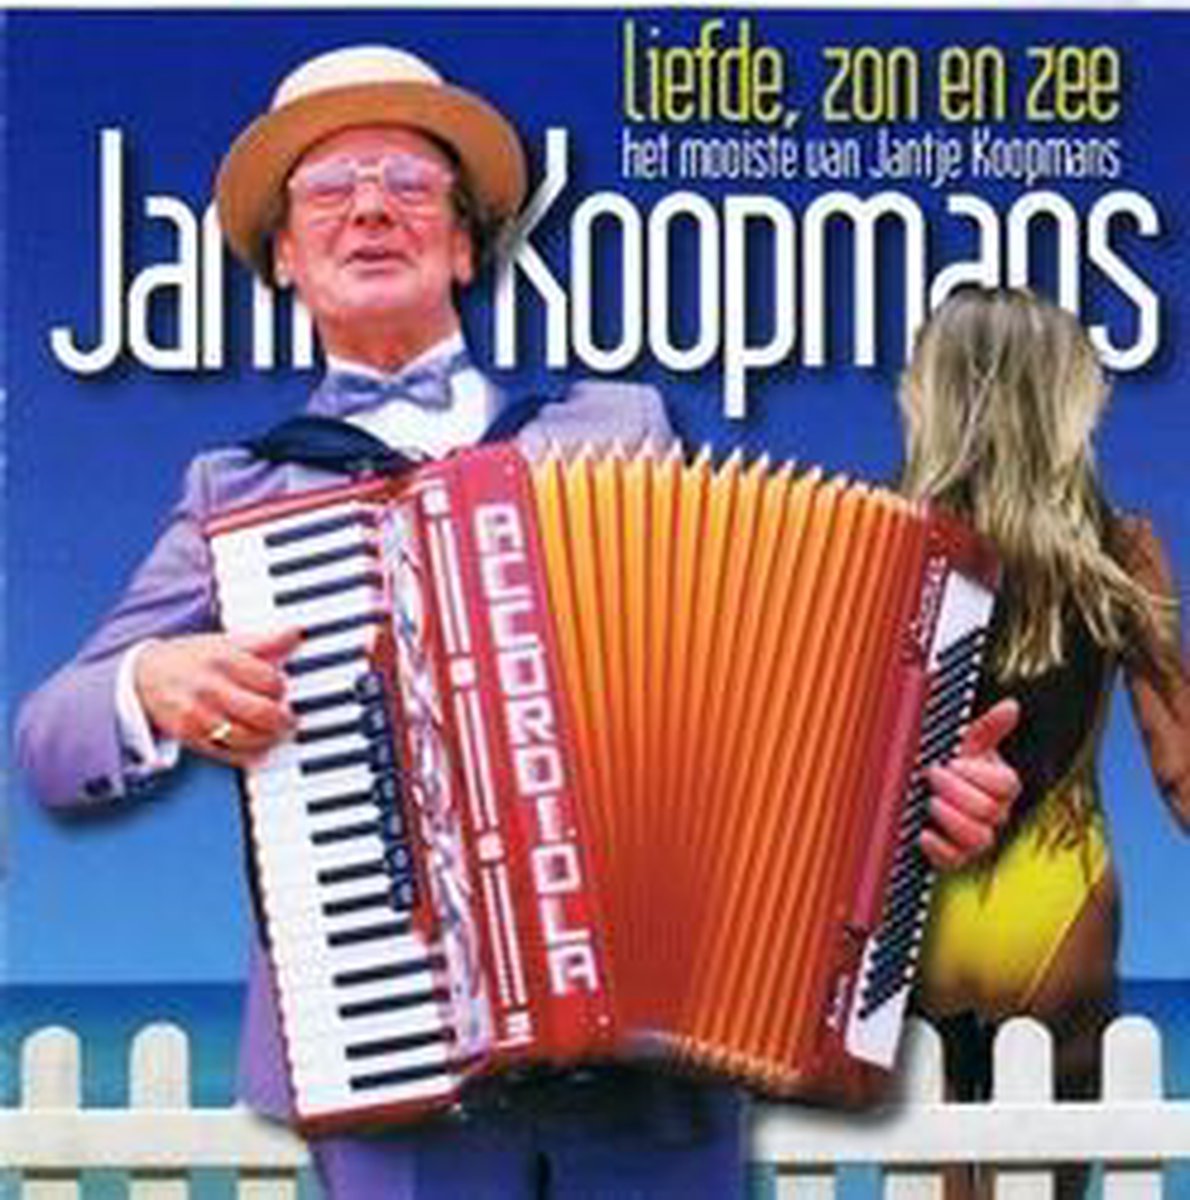 Liefde, zon en zee  ( best of ) - Jantje Koopmans